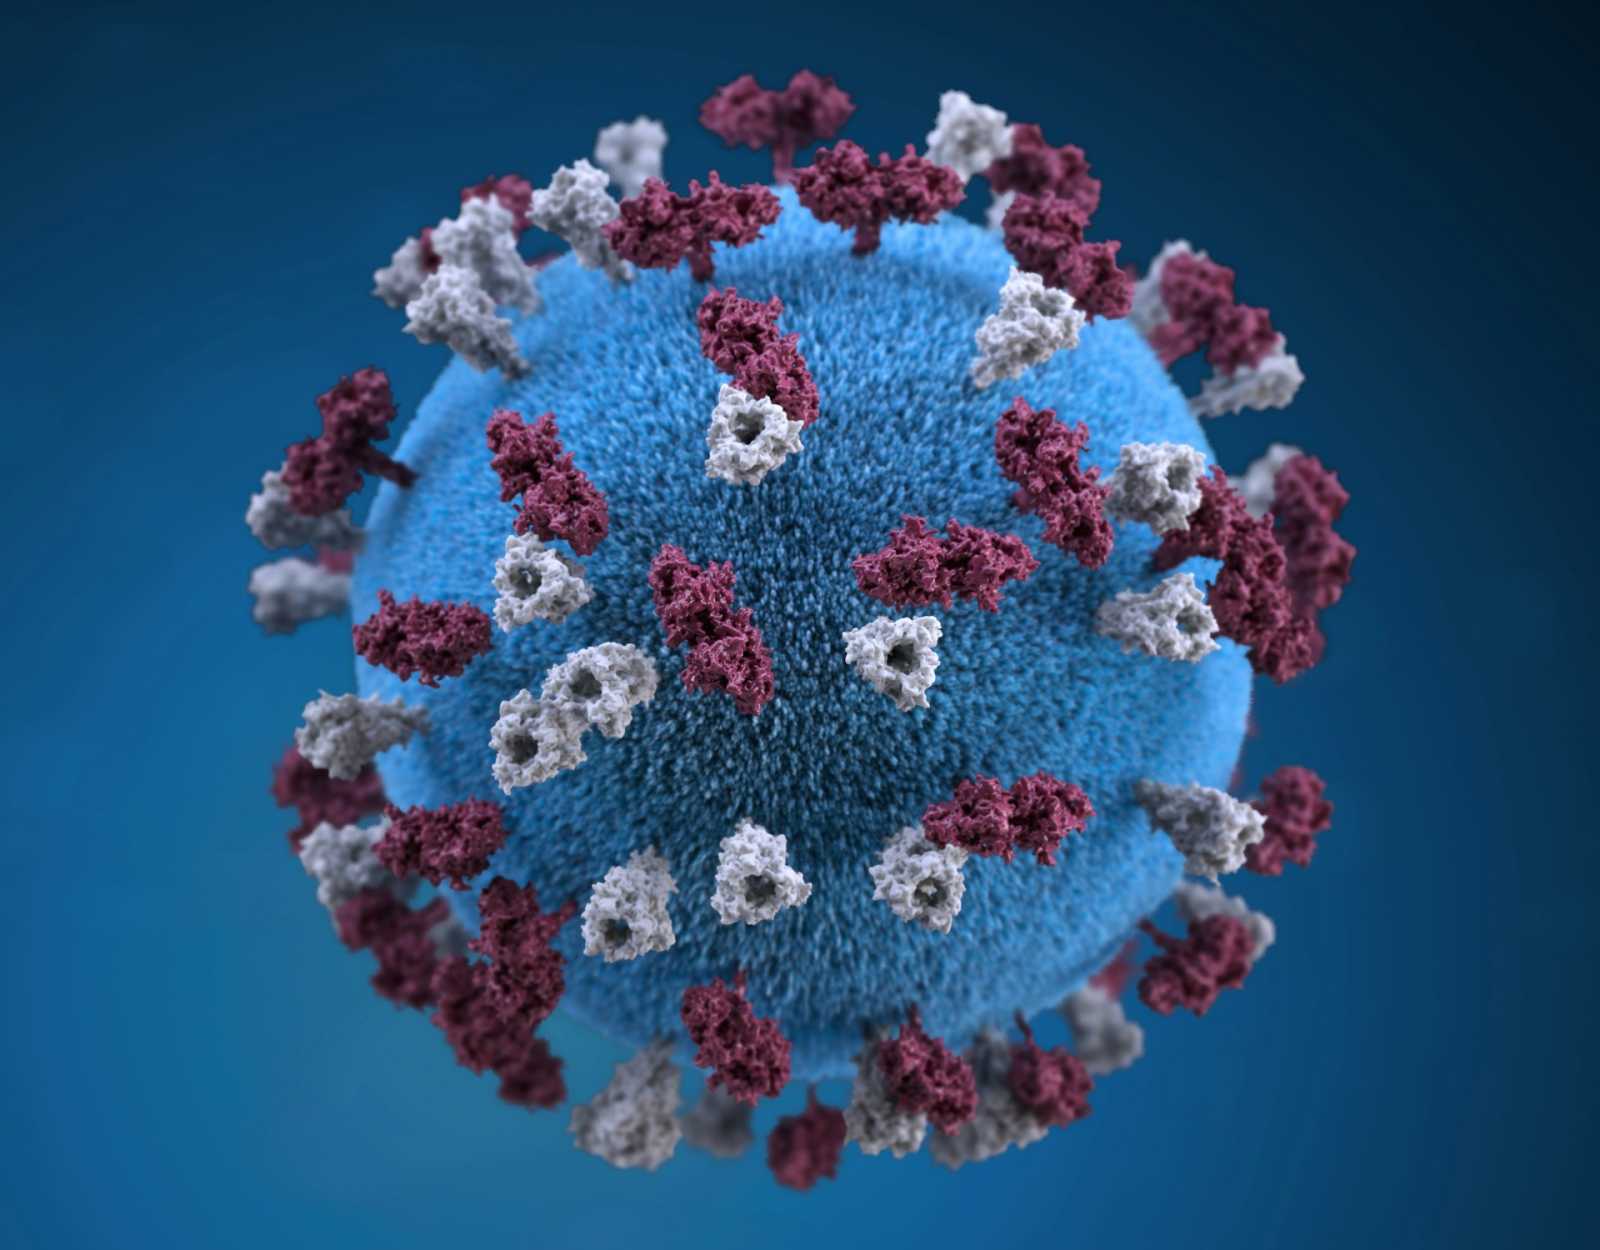 Illusztráció: egy gömb alakú, kanyaróvírus részecske ábrája 3D-ben | Forrás: Unsplash